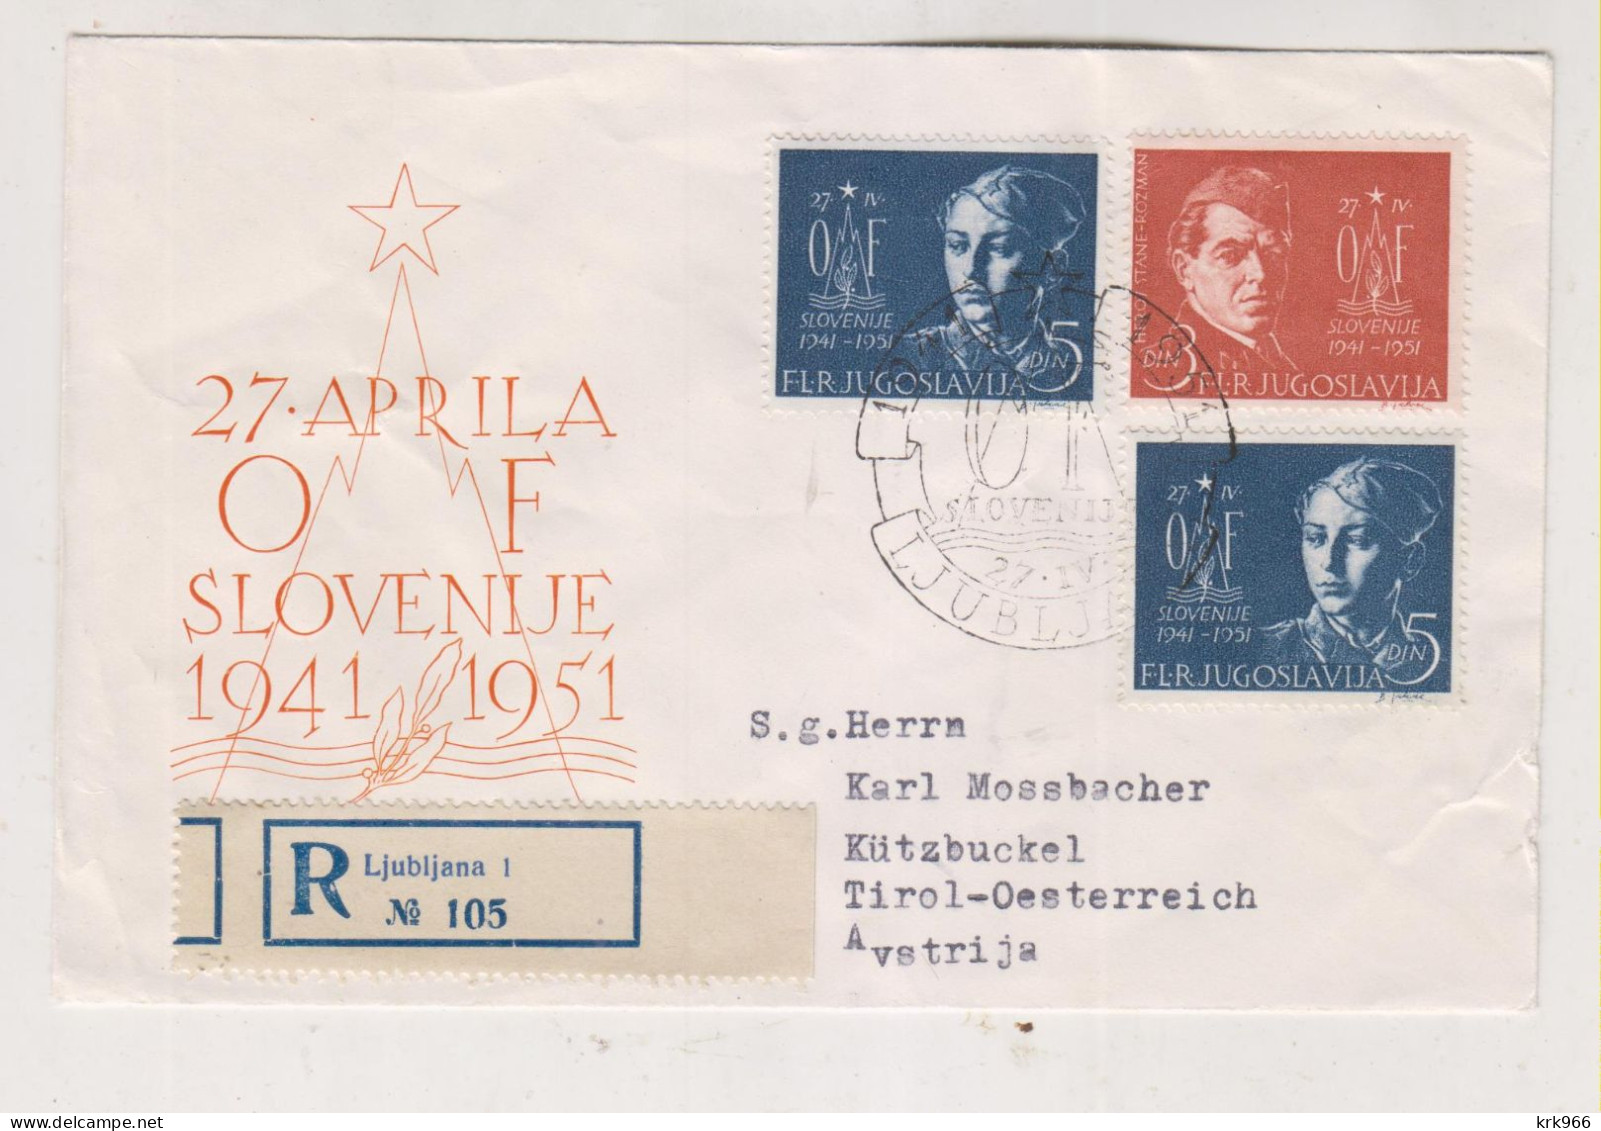 YUGOSLAVIA,1951 LJUBLJANA Nice Registered Cover To Austria - Lettres & Documents